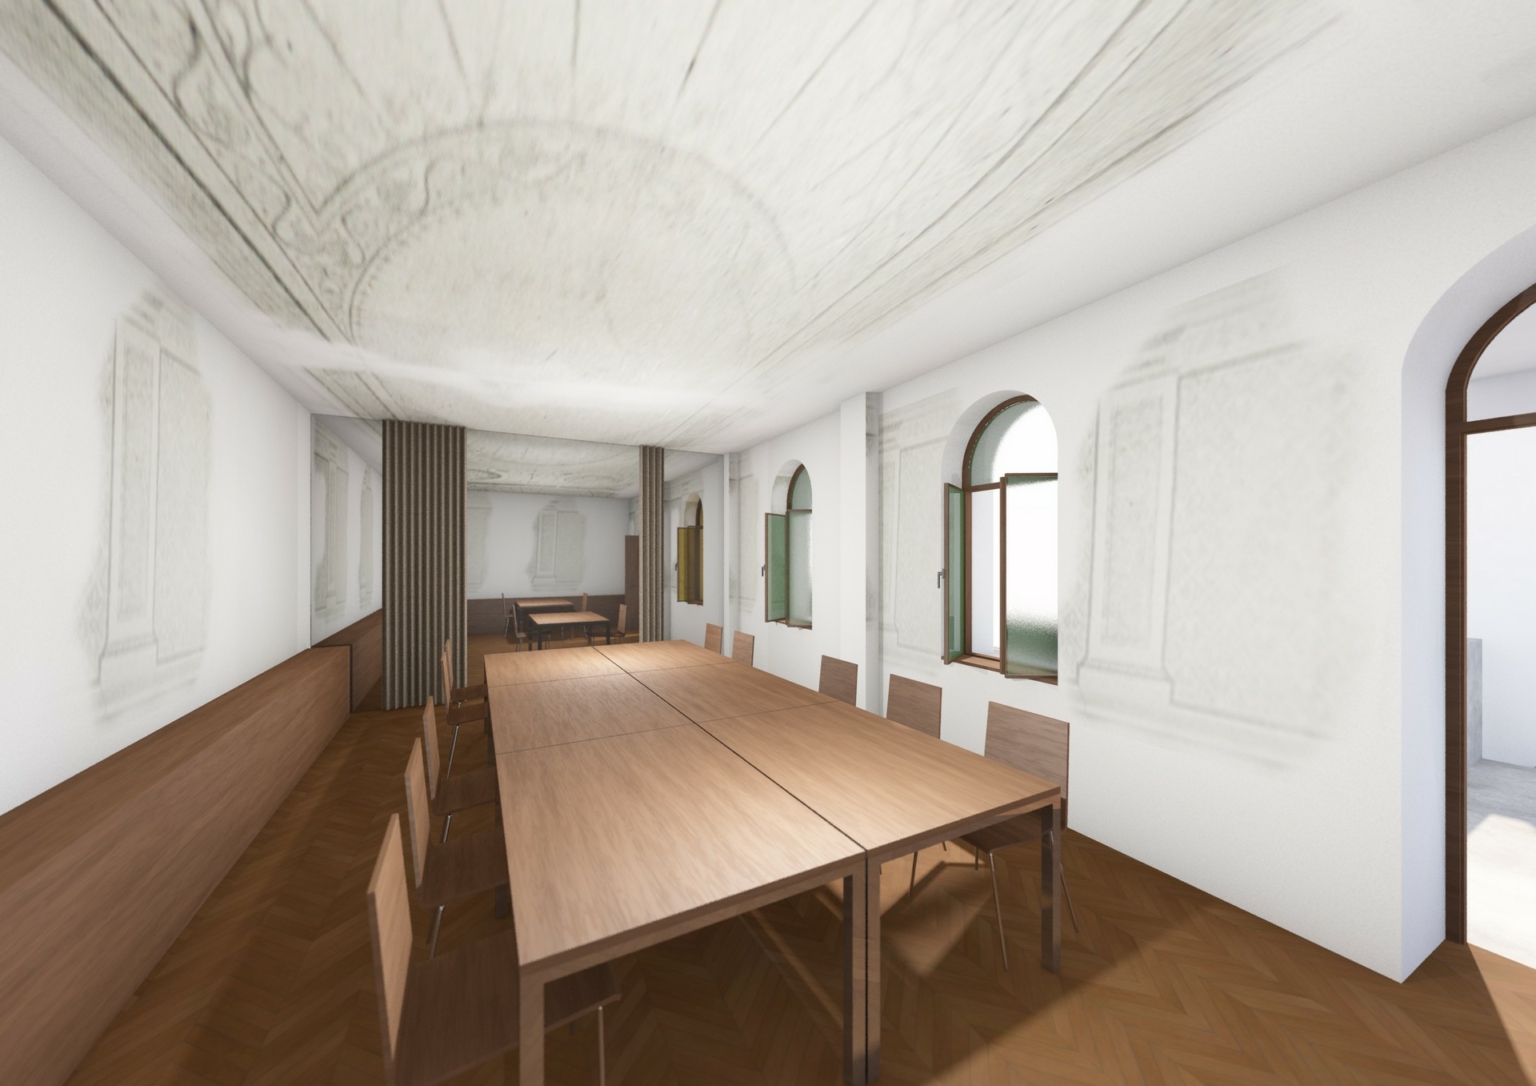 Rathaus Feldkirchen, Visualisierung geplanter Besprechungsraum in der ehemaligen historischen Kapelle